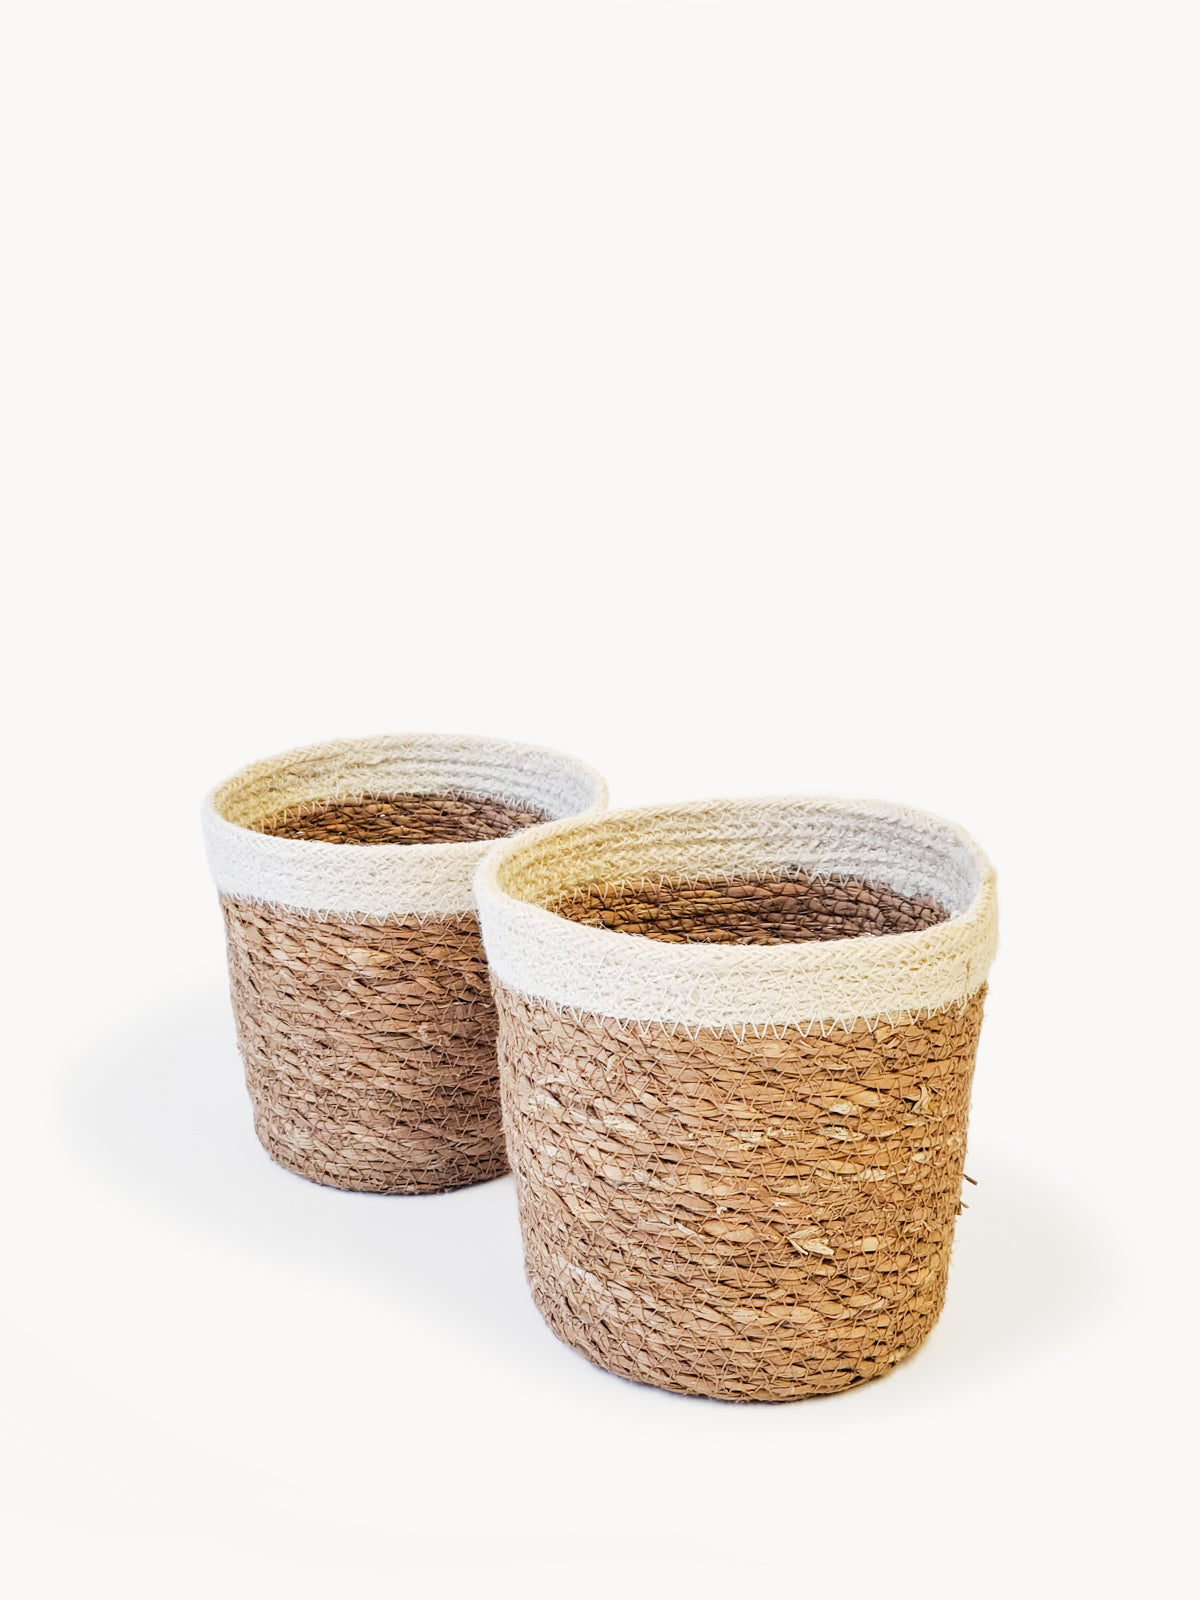 
                  
                    Savar Plant Basket by KORISSA
                  
                